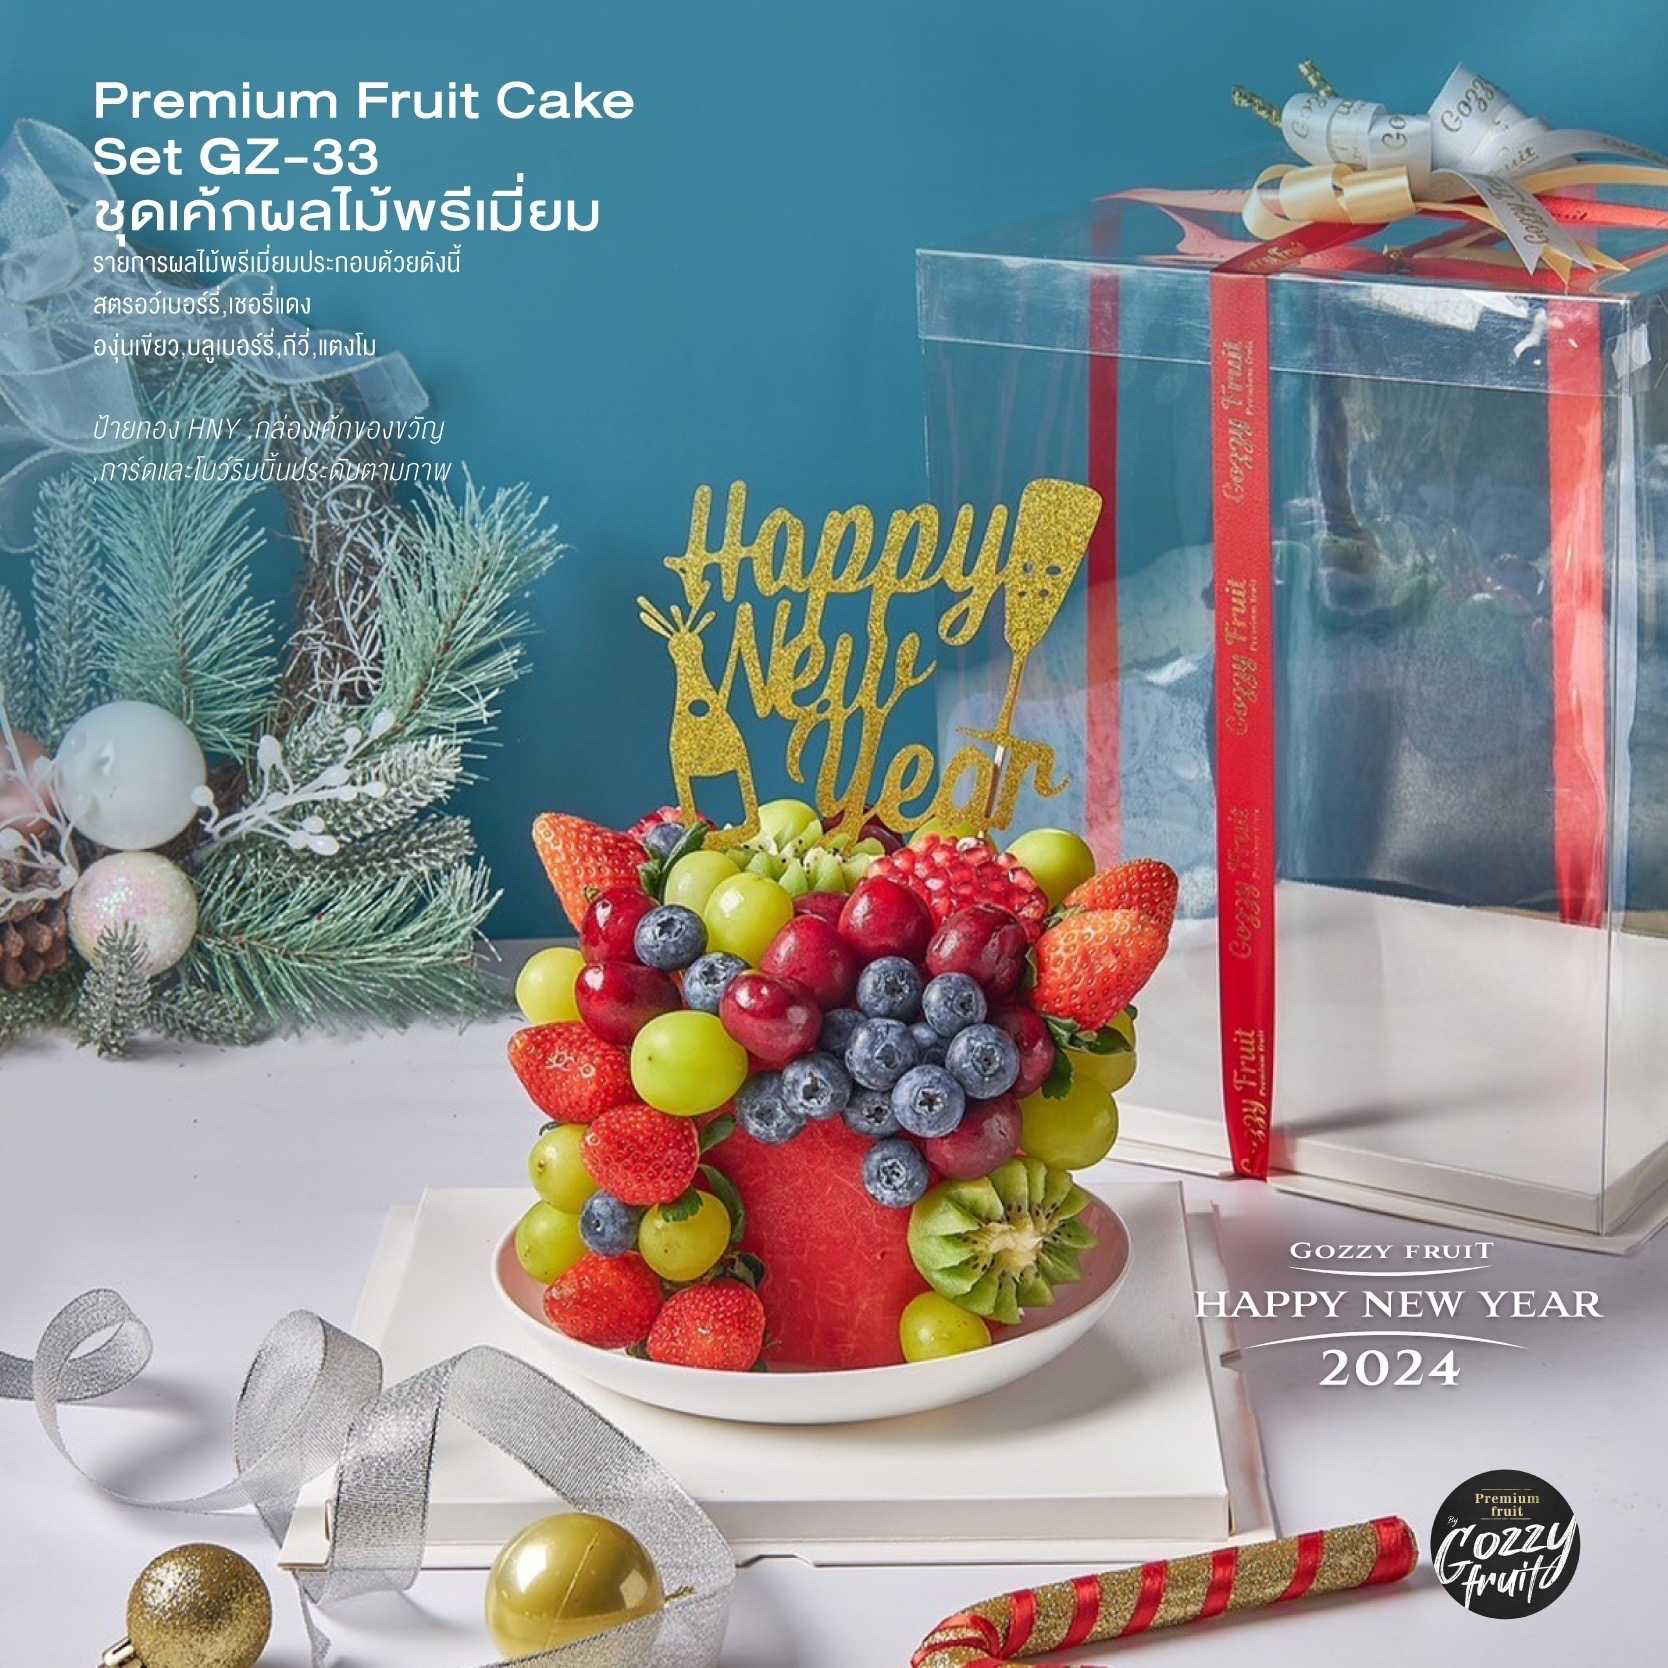 เค้กผลไม้พรีเมี่ยม Premium Fruit Cake Set GZ-33 ปาร์ตี้ปีใหม่ 